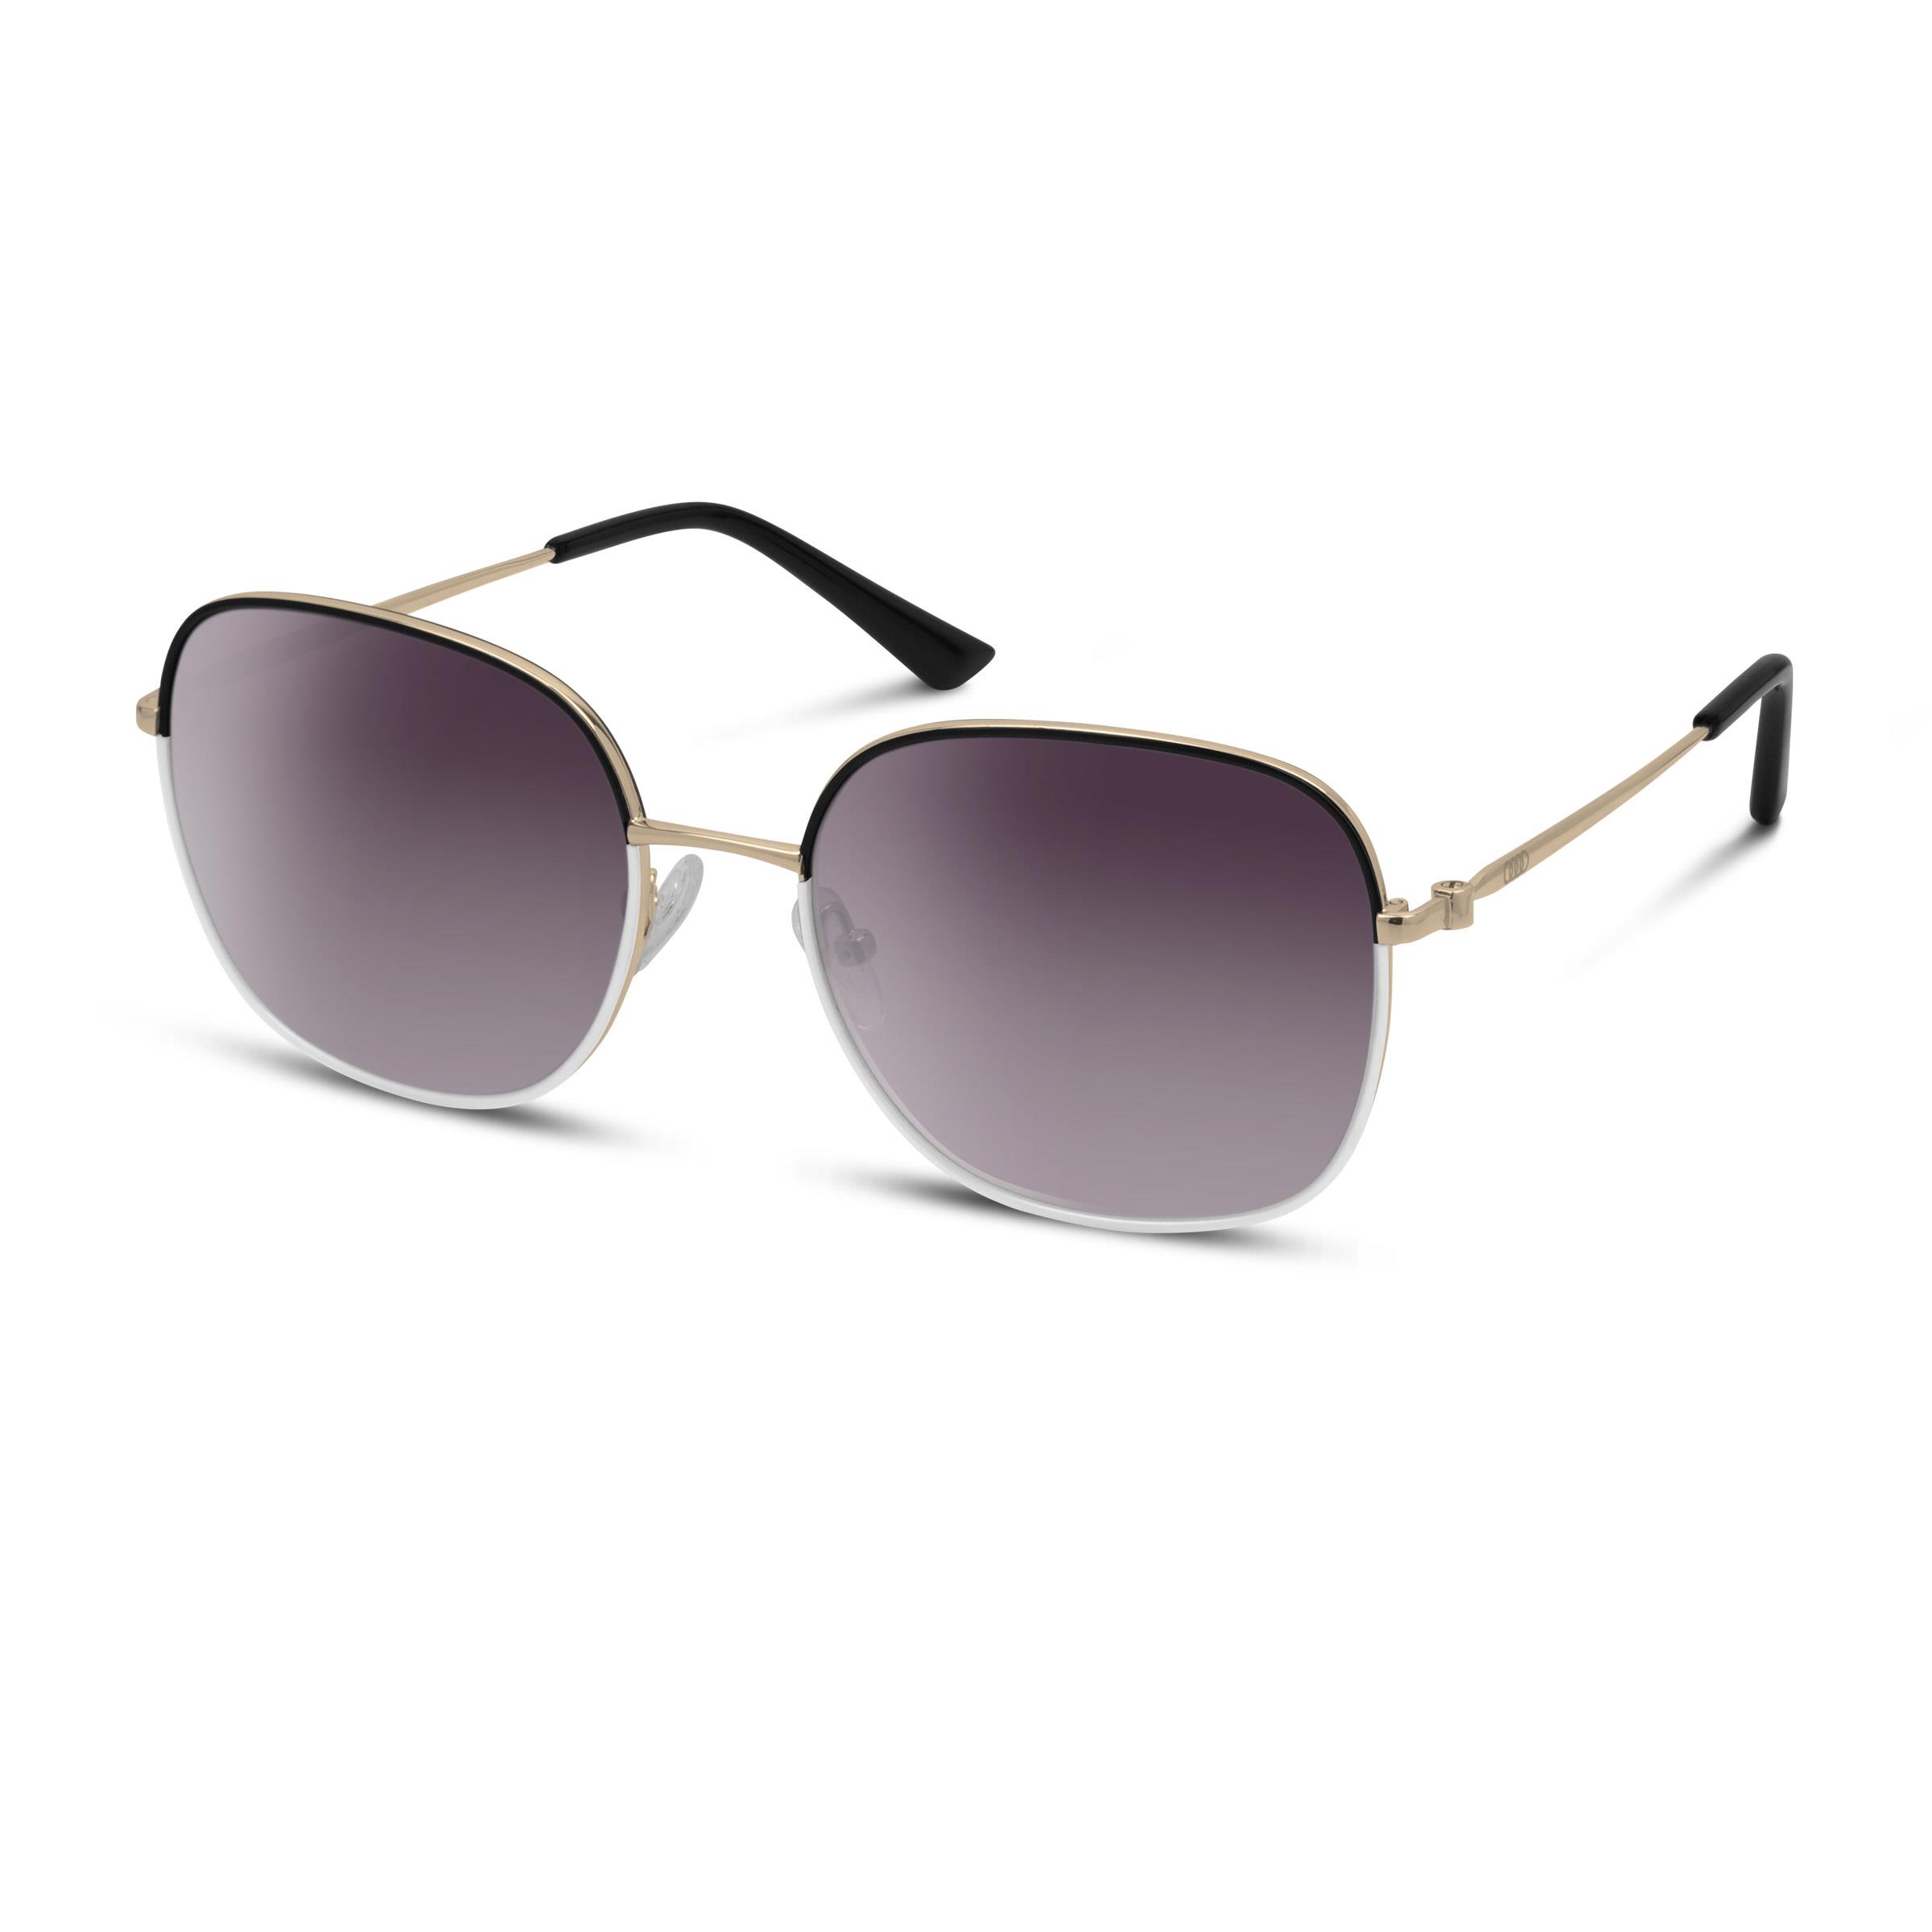 Original Audi Sonnenbrille, Damen, gold schwarz weiß Sunglasses